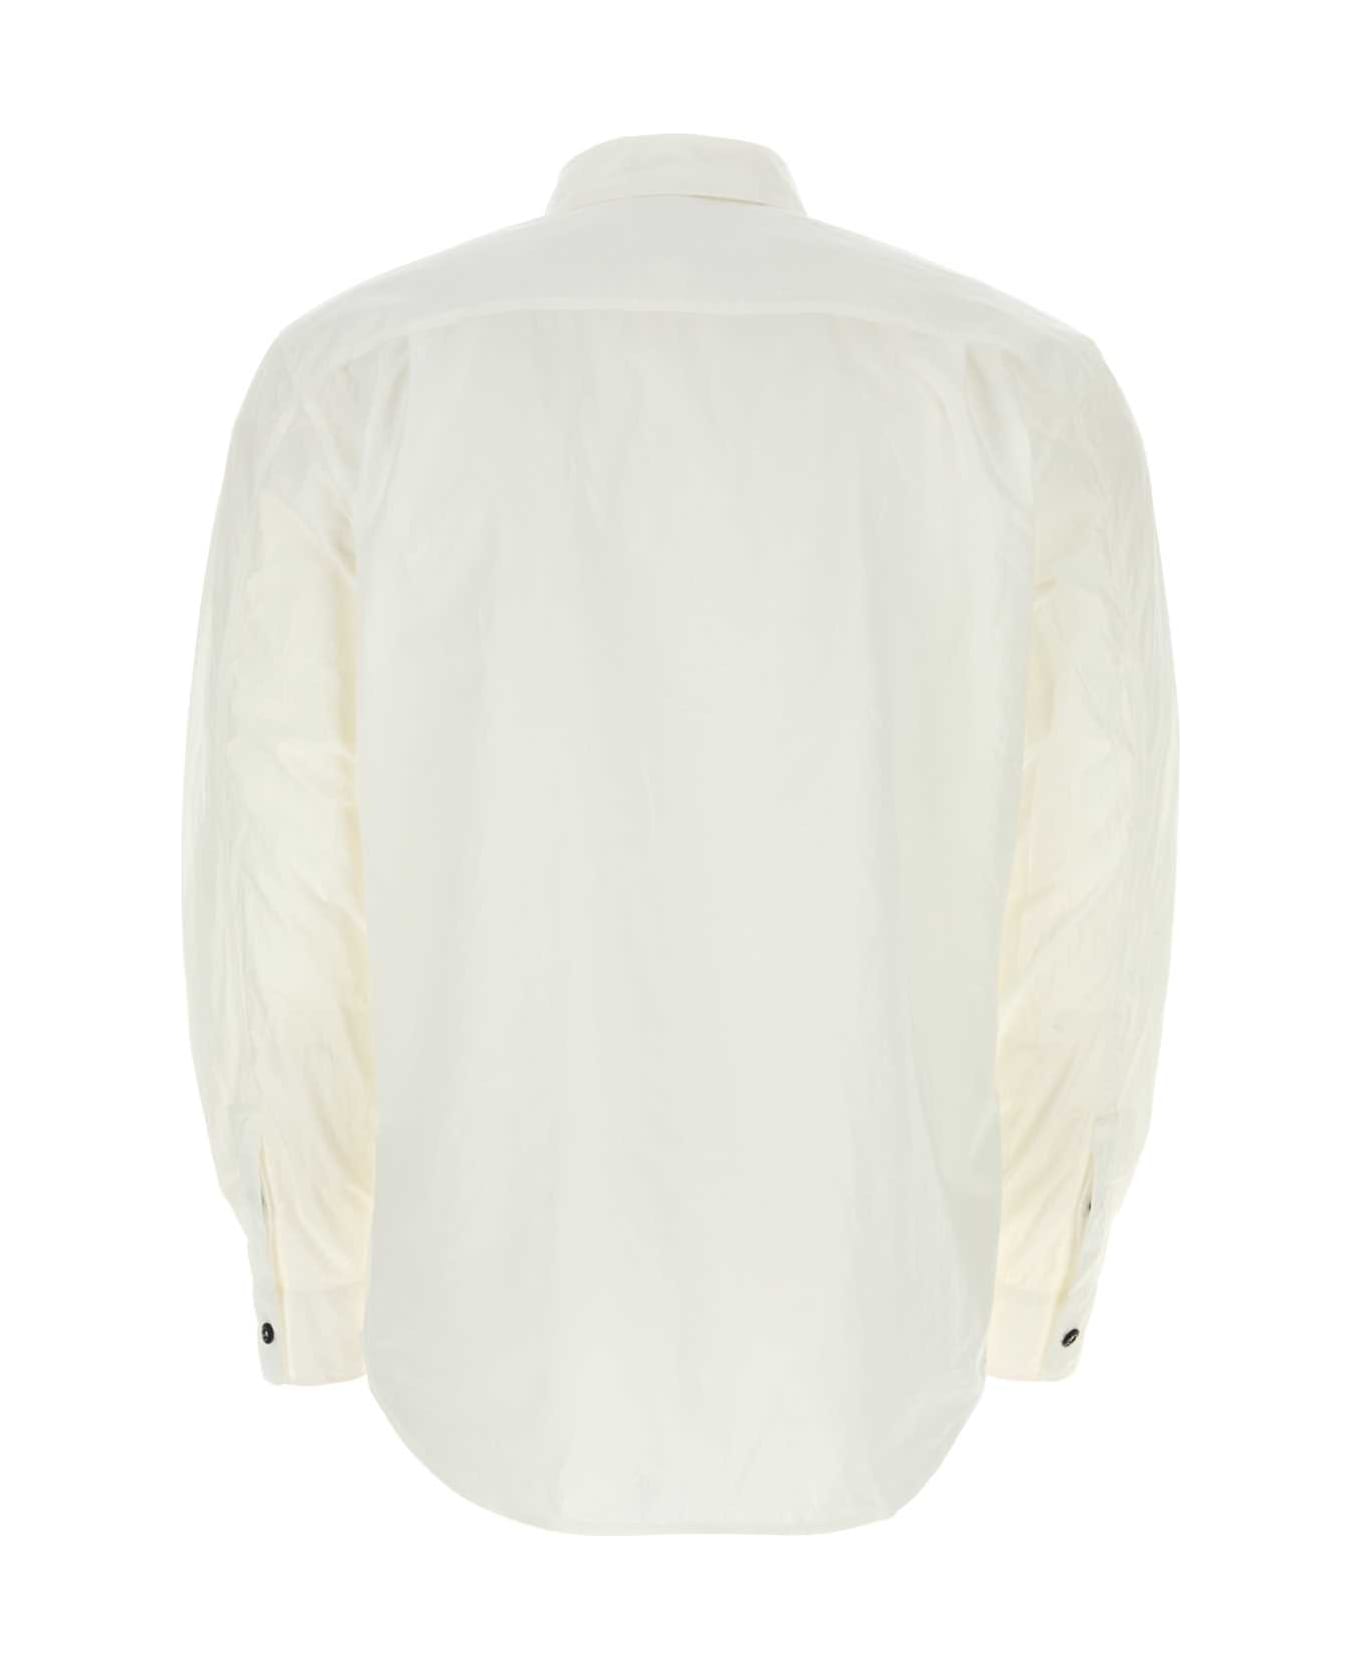 Stone Island White Cotton Shirt - WHITE シャツ